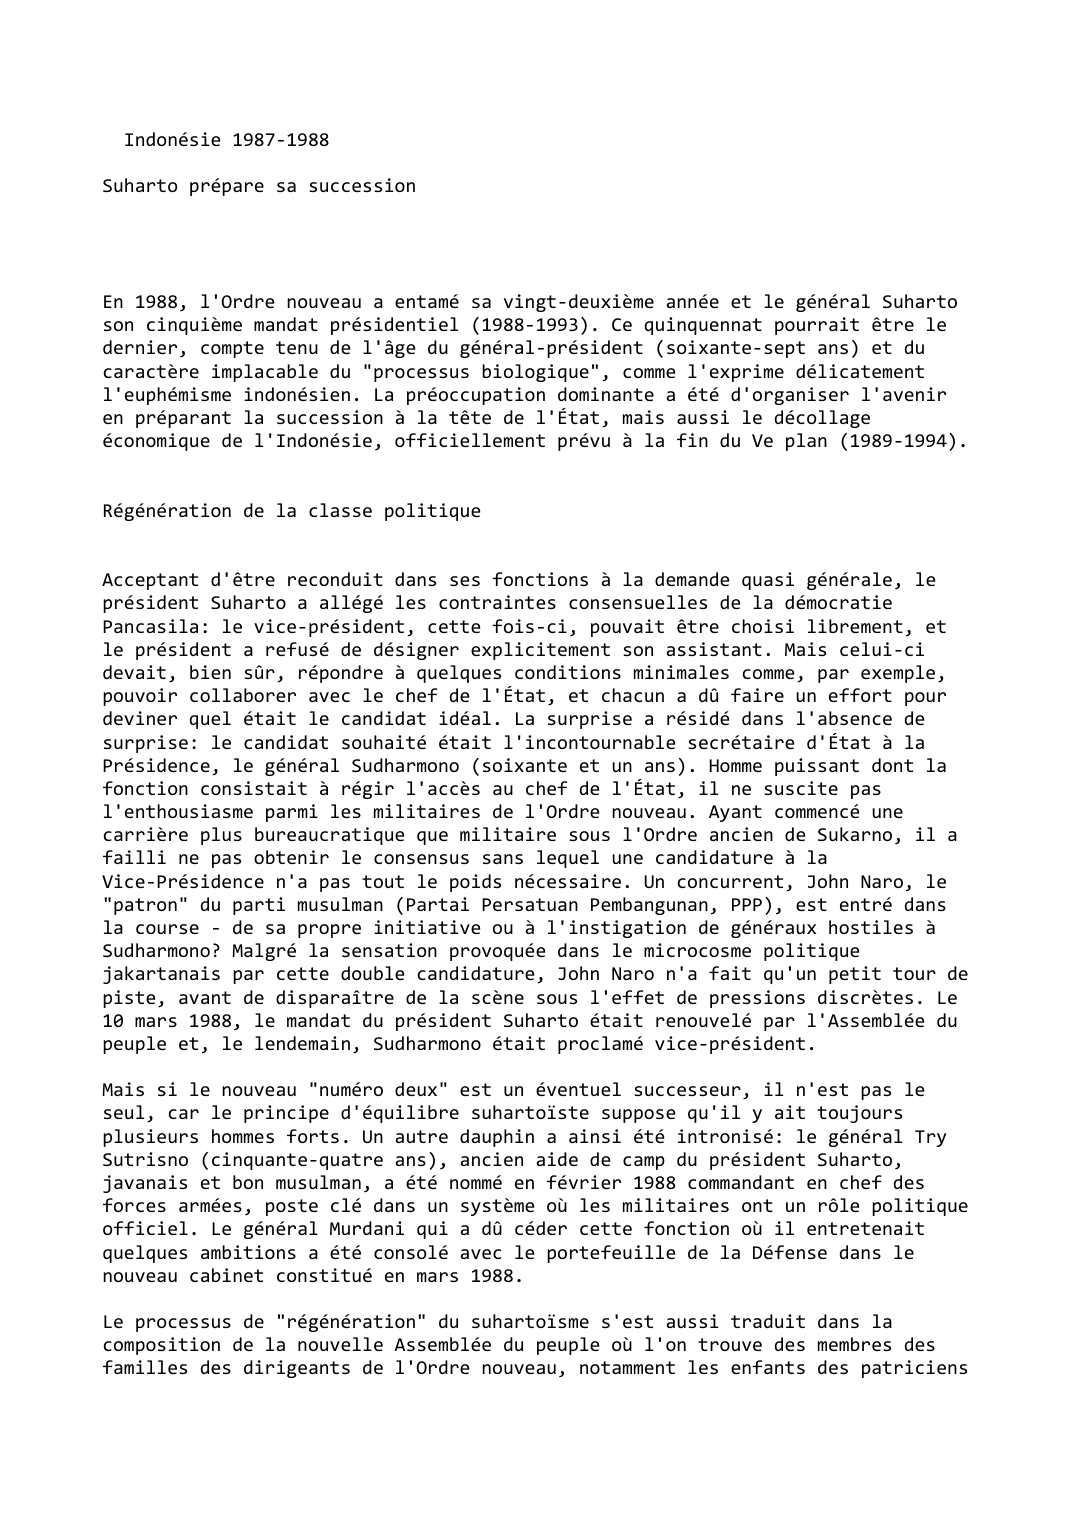 Prévisualisation du document Indonésie (1987-1988)

Suharto prépare sa succession